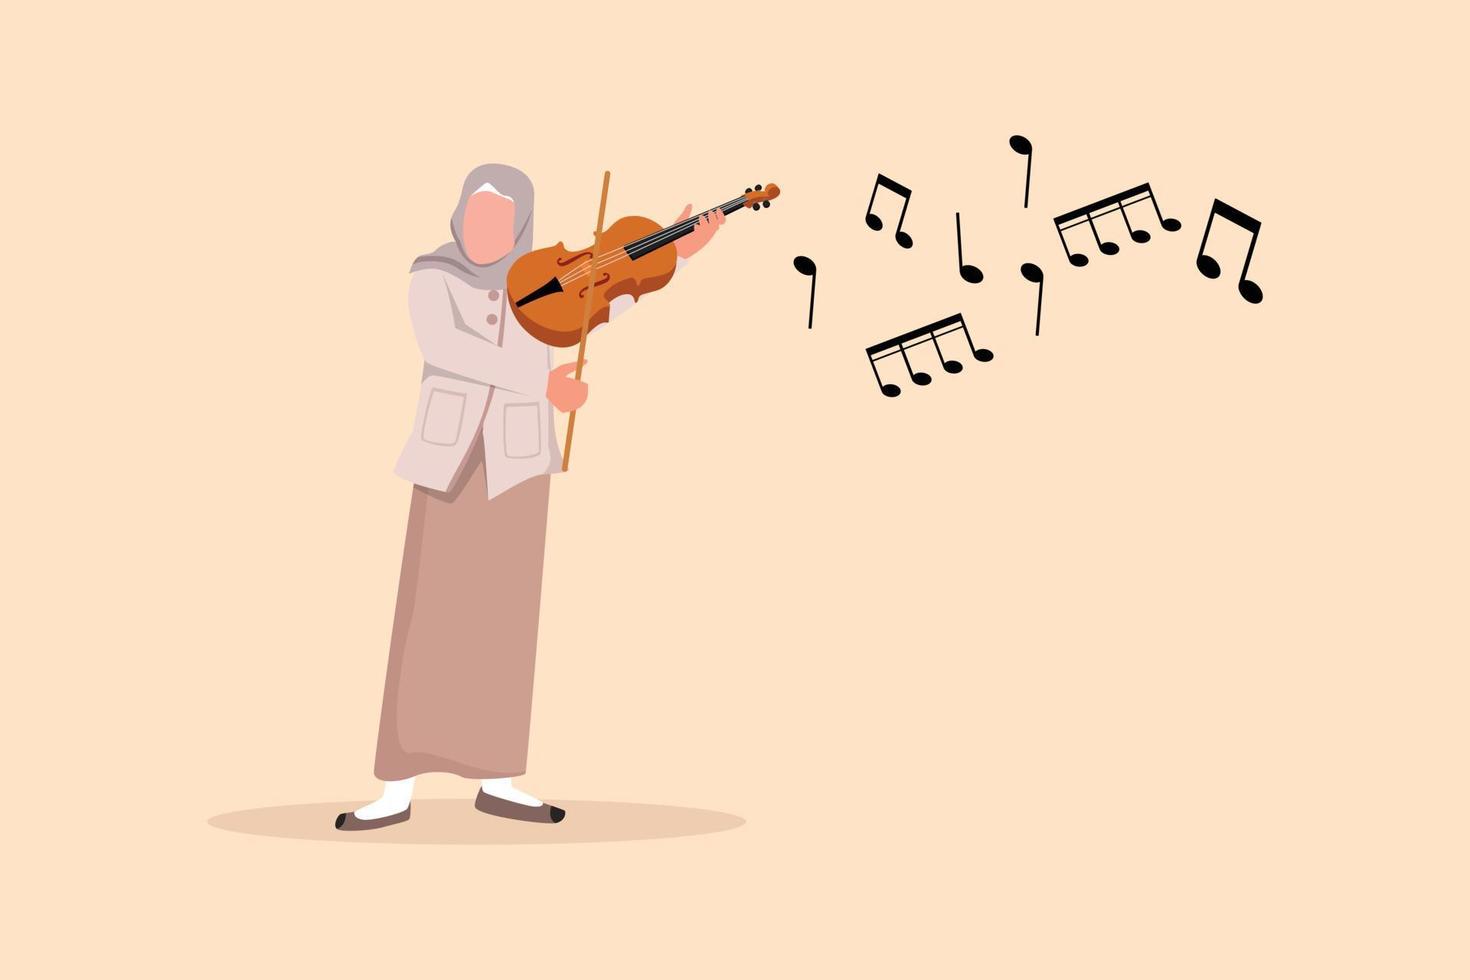 dessin de conception d'entreprise femme arabe musicienne jouant du violon. interprète de musique classique avec instrument de musique. musicienne jouant du violon au festival de musique. illustration vectorielle de style dessin animé plat vecteur